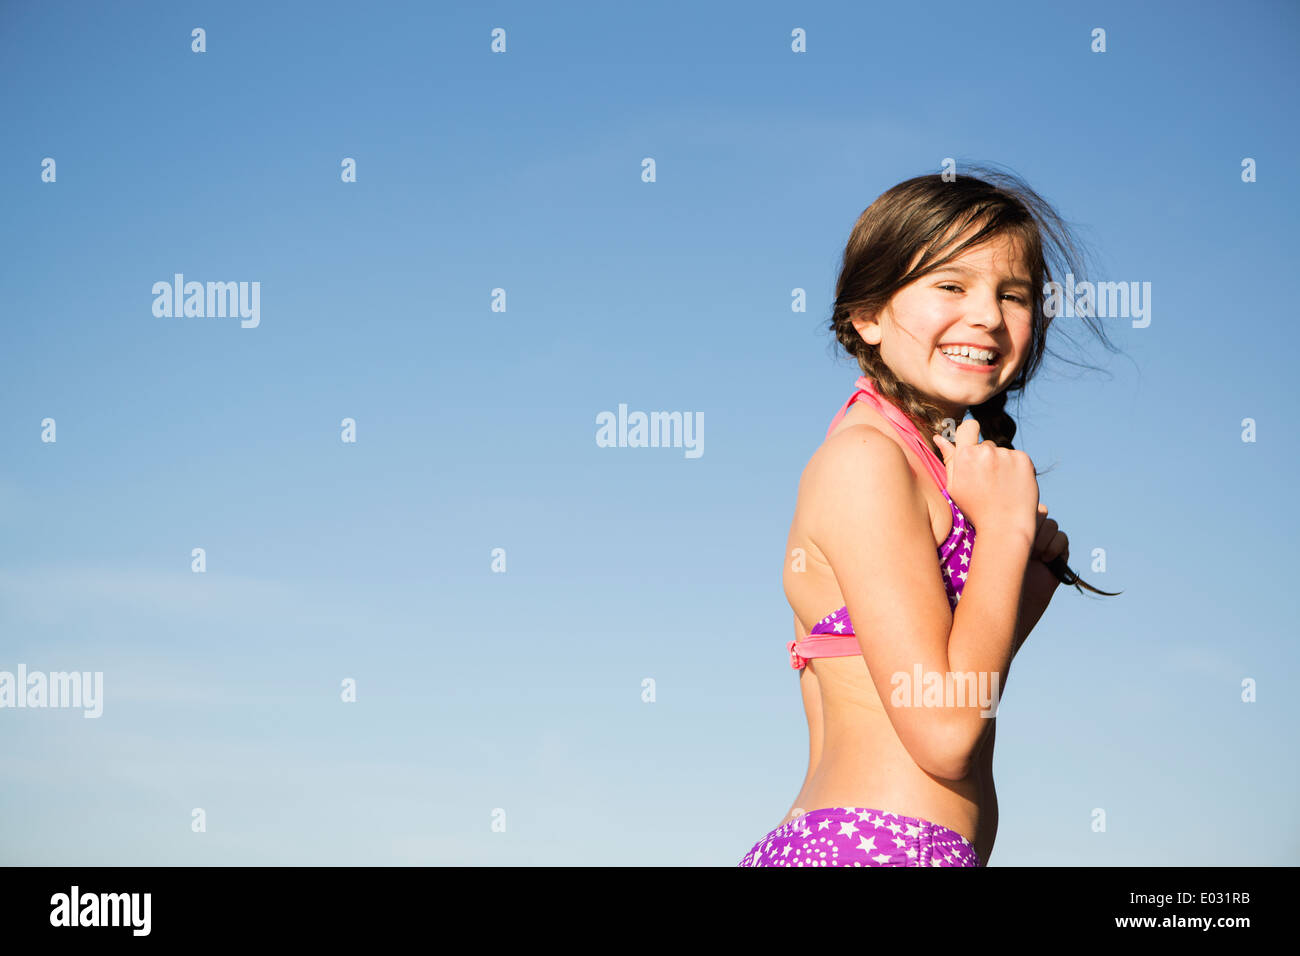 Child Bikini Stockfotos Und Bilder Kaufen Alamy